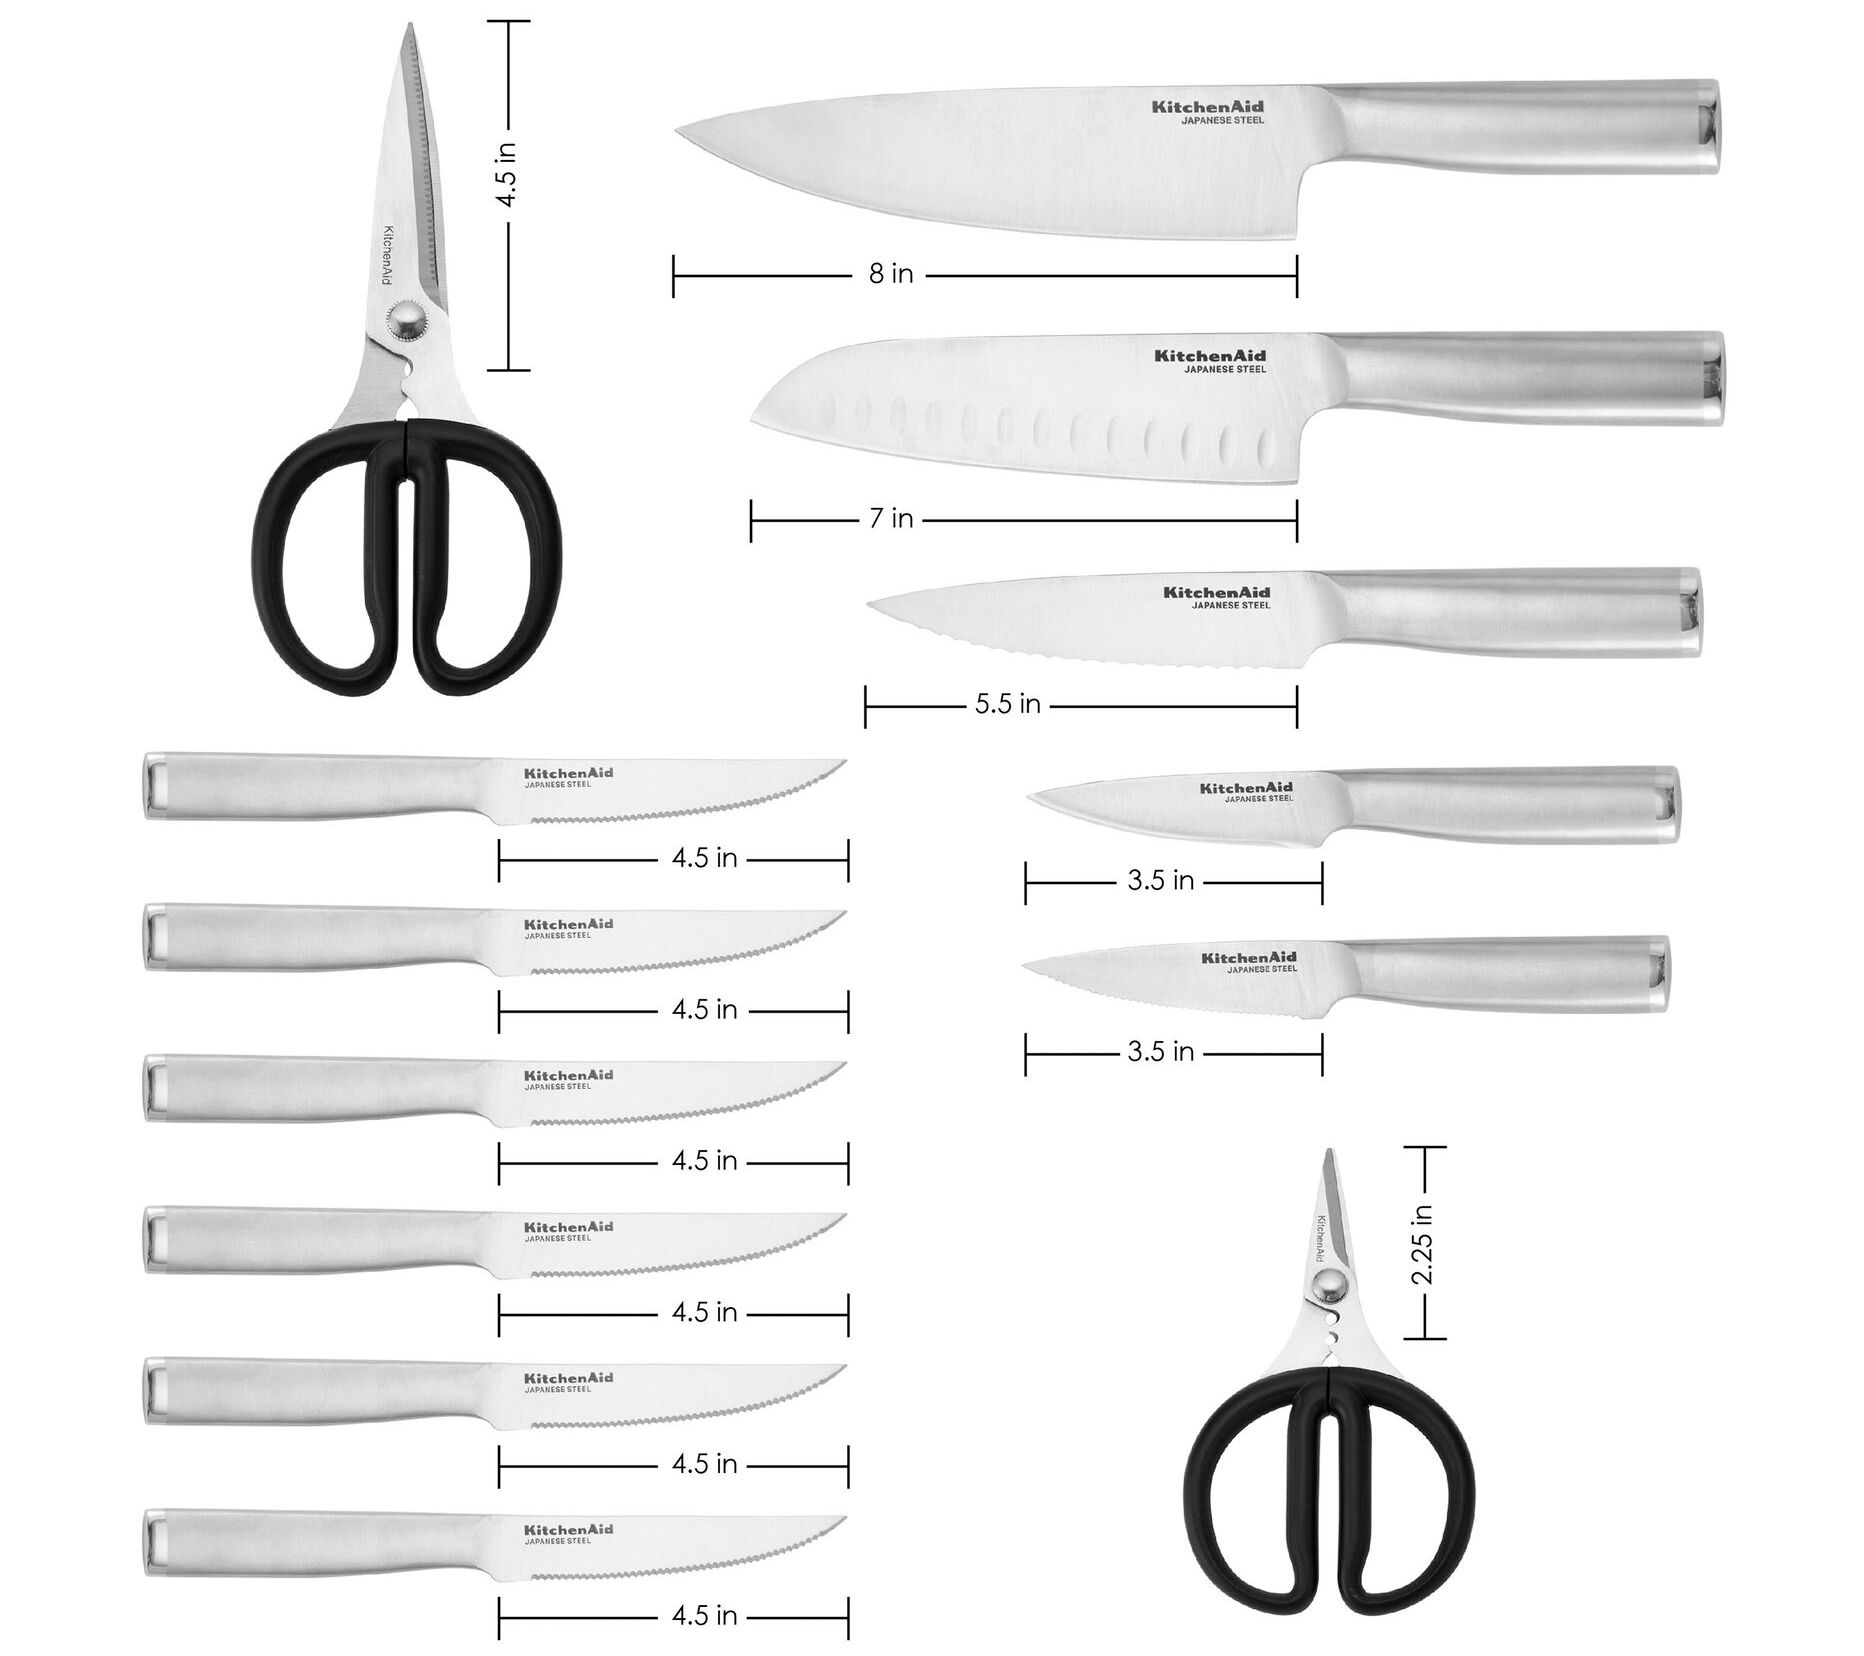 Knife Sets for Kitchen with Block, HUNTER.DUAL 15 Piece Knife Set with Built-in Sharpener, Dishwasher Safe, German Stainless Steel, Elegant Black